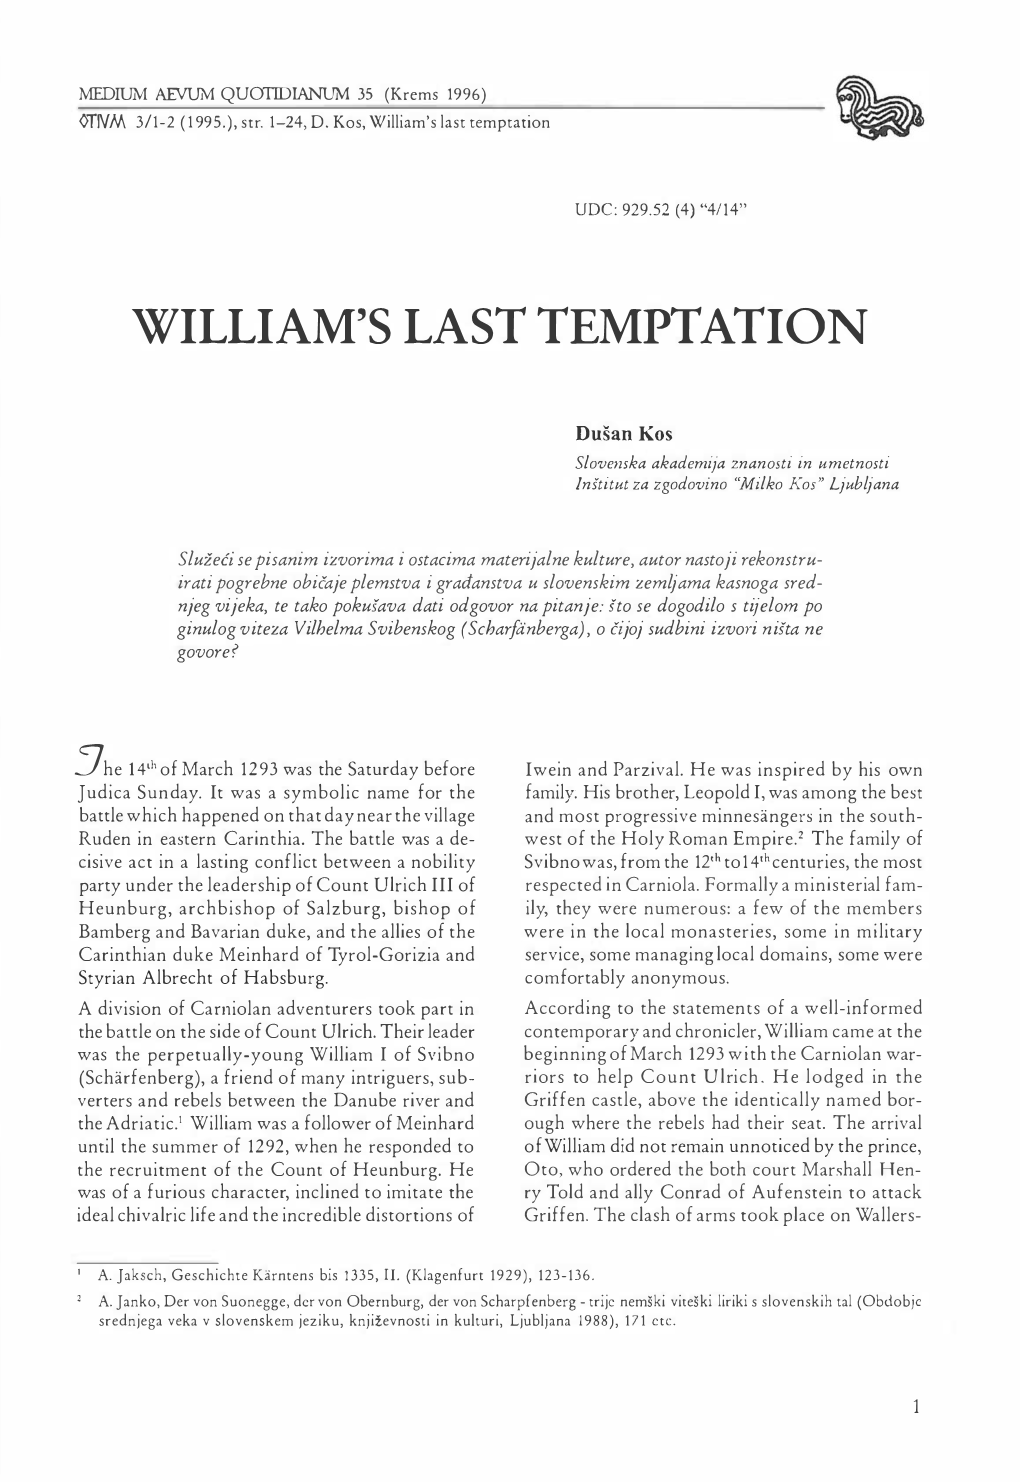 William's Last Temptation